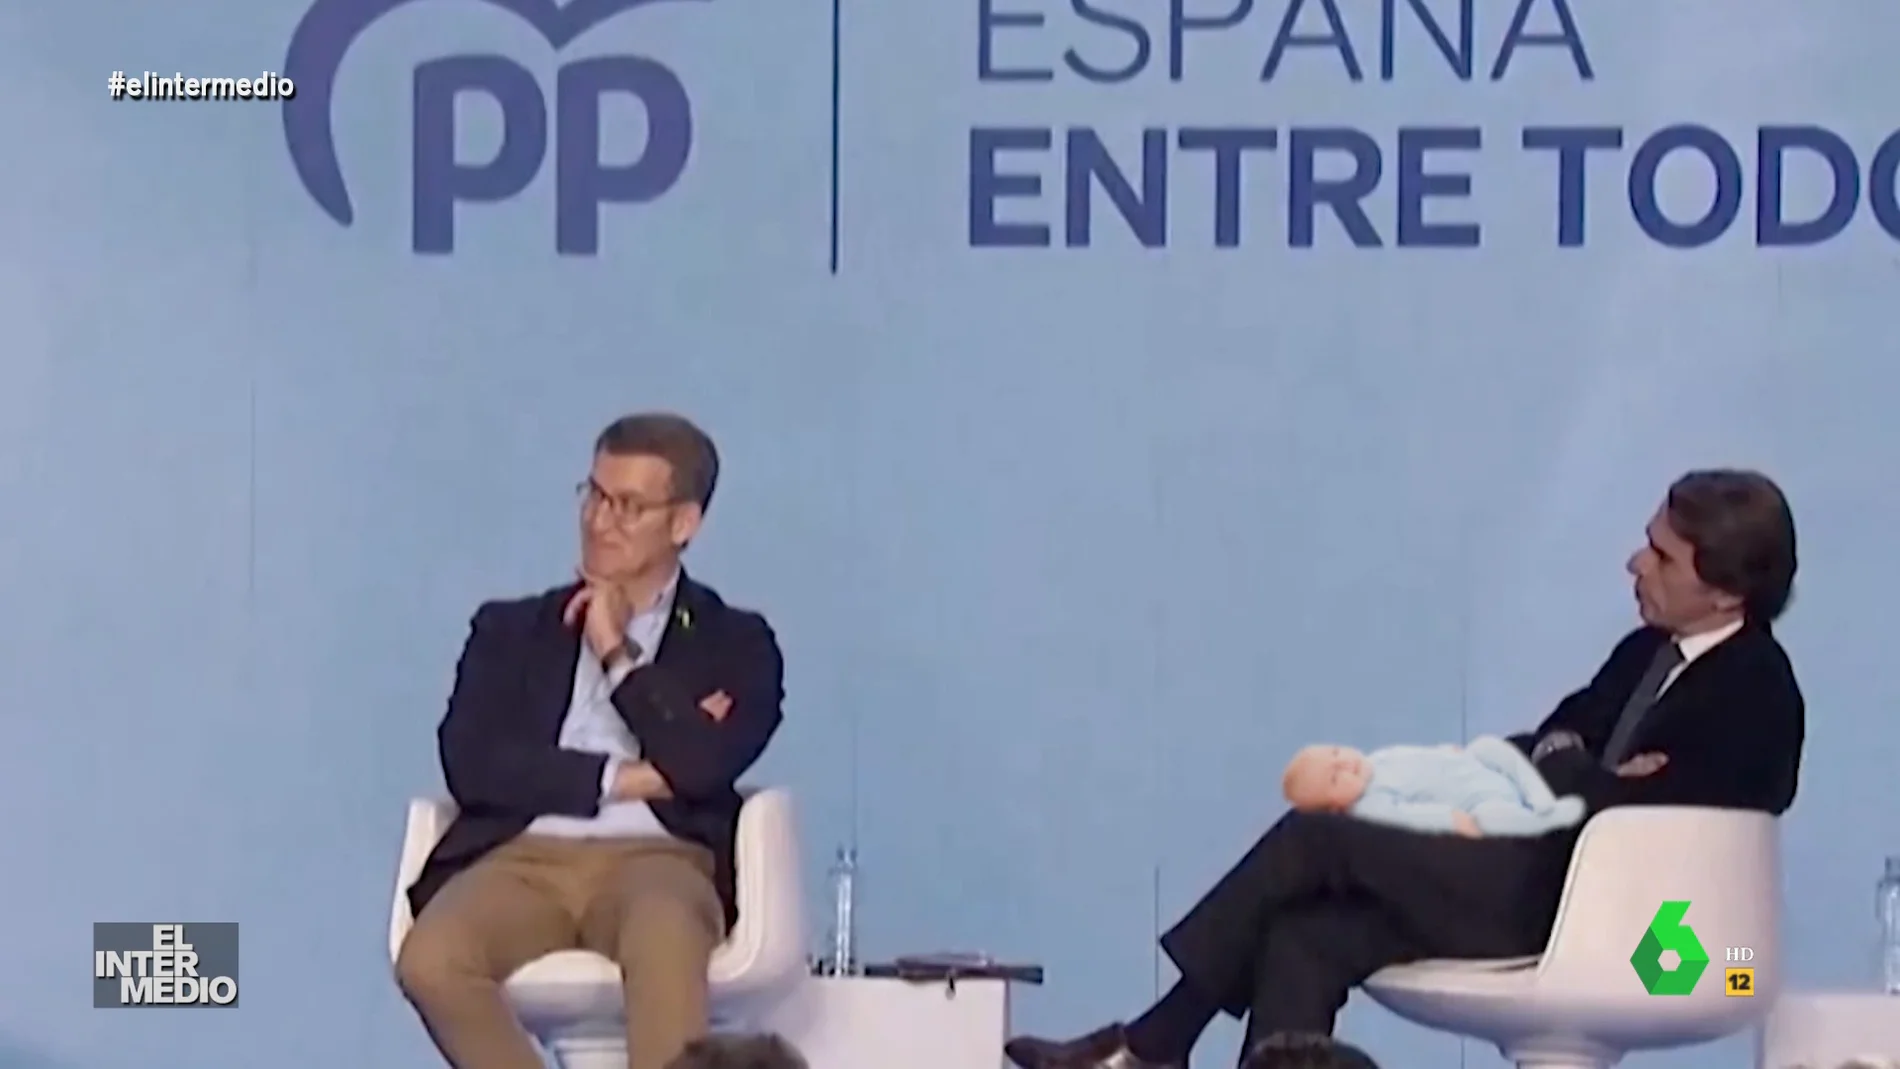 Vídeo manipulado - Así intenta Aznar dormir a un bebé en sus brazos mientras Rajoy habla